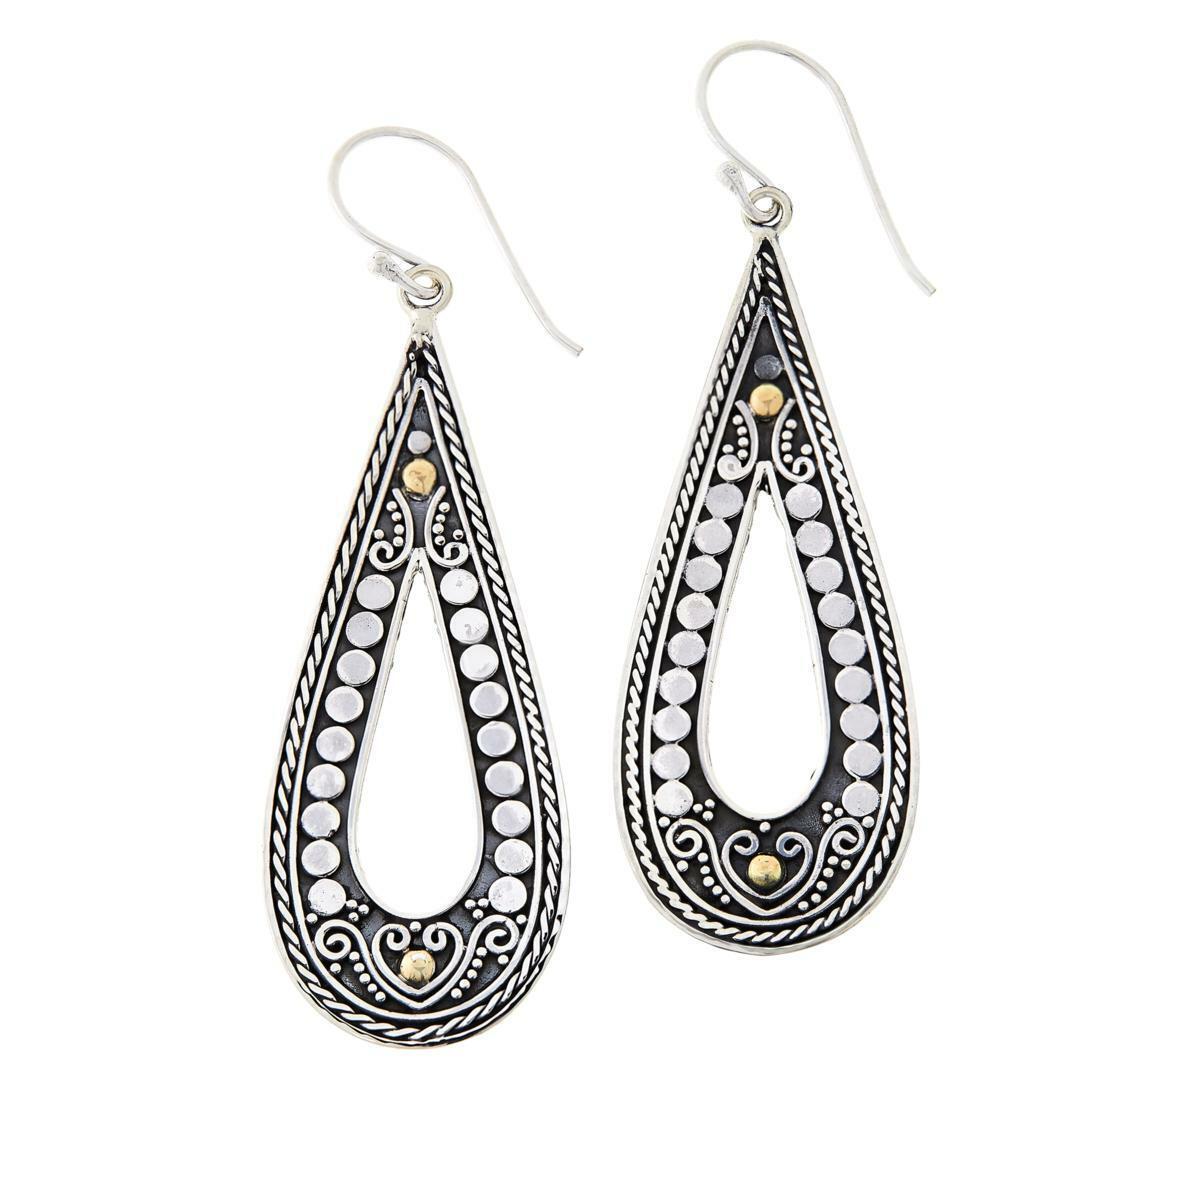 Bali Designs Sterling Silver &18K Gold Pear Shaped Hook Drop Earrings HSN $90